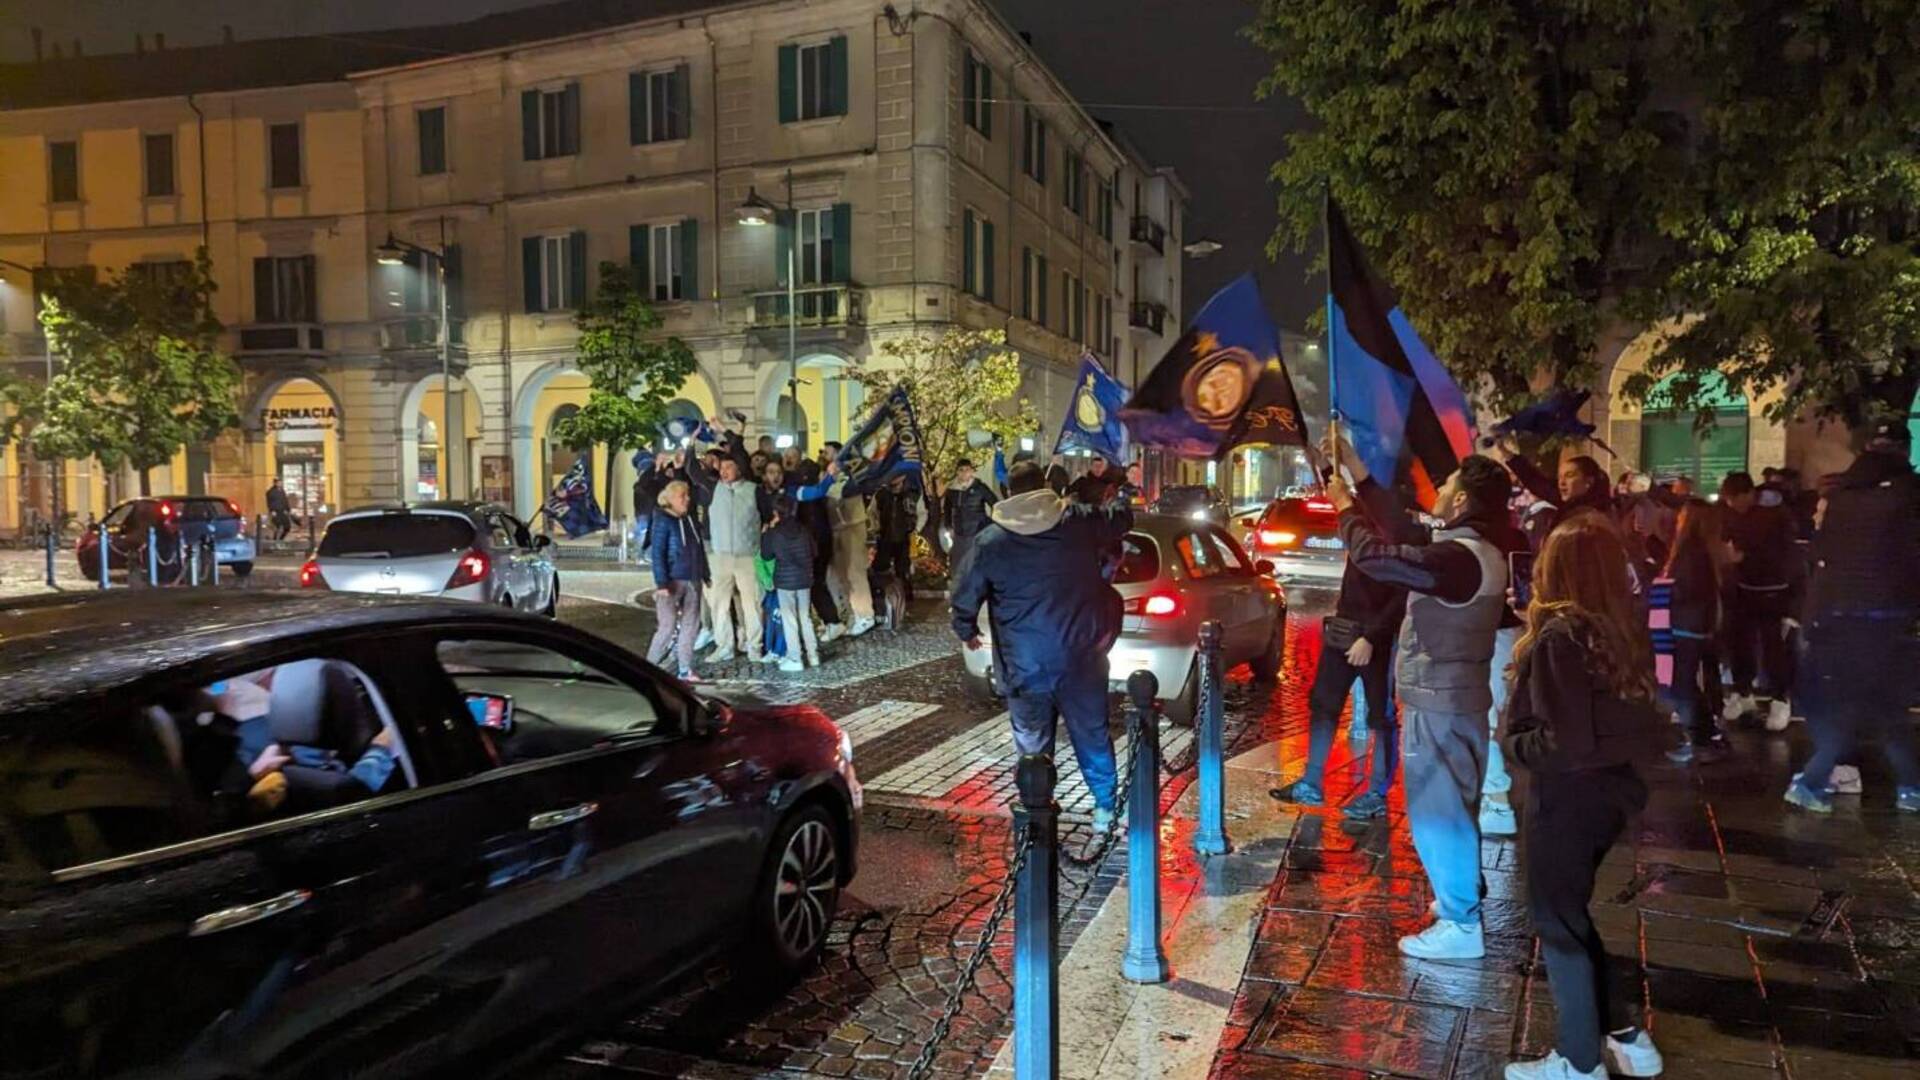 Inter campione d’Italia: a Saronno festa in piazza con fuochi d’artificio e fumogeni